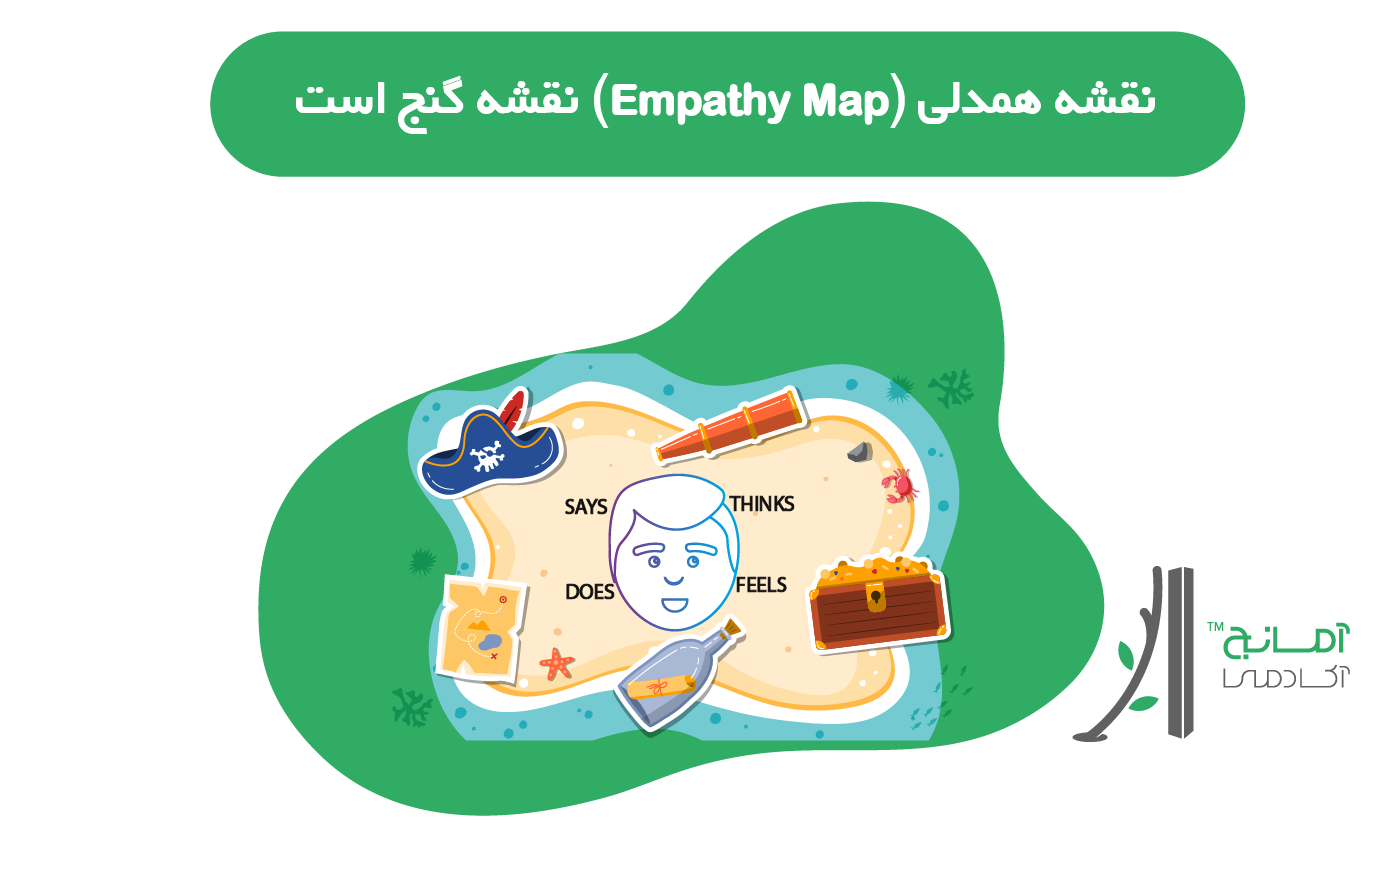 نقشه همدلی (Empathy Map) نقشه گنج است